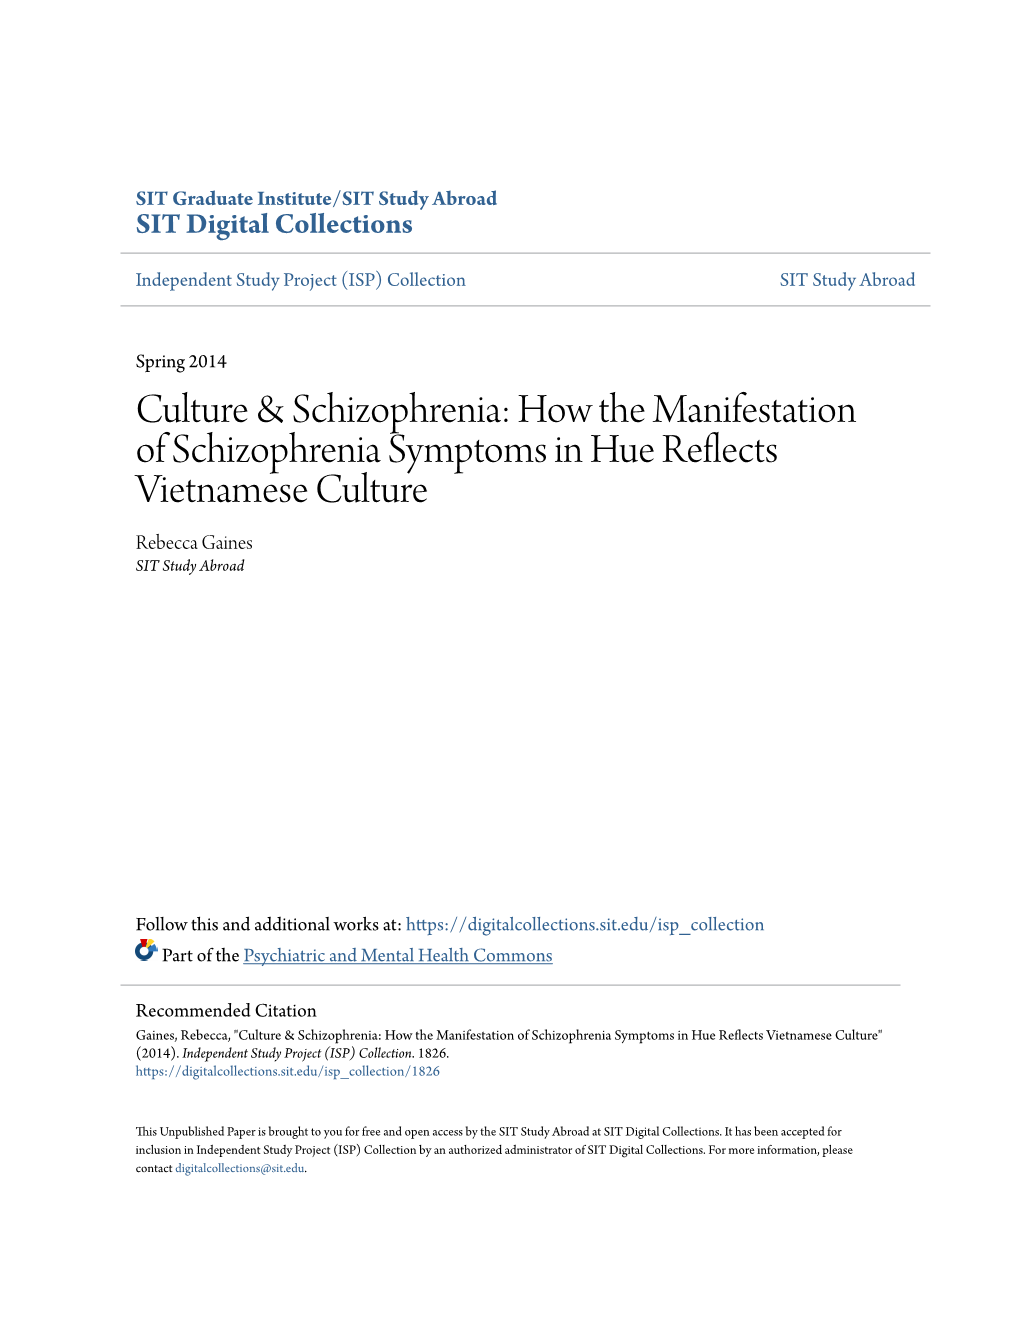 Culture & Schizophrenia